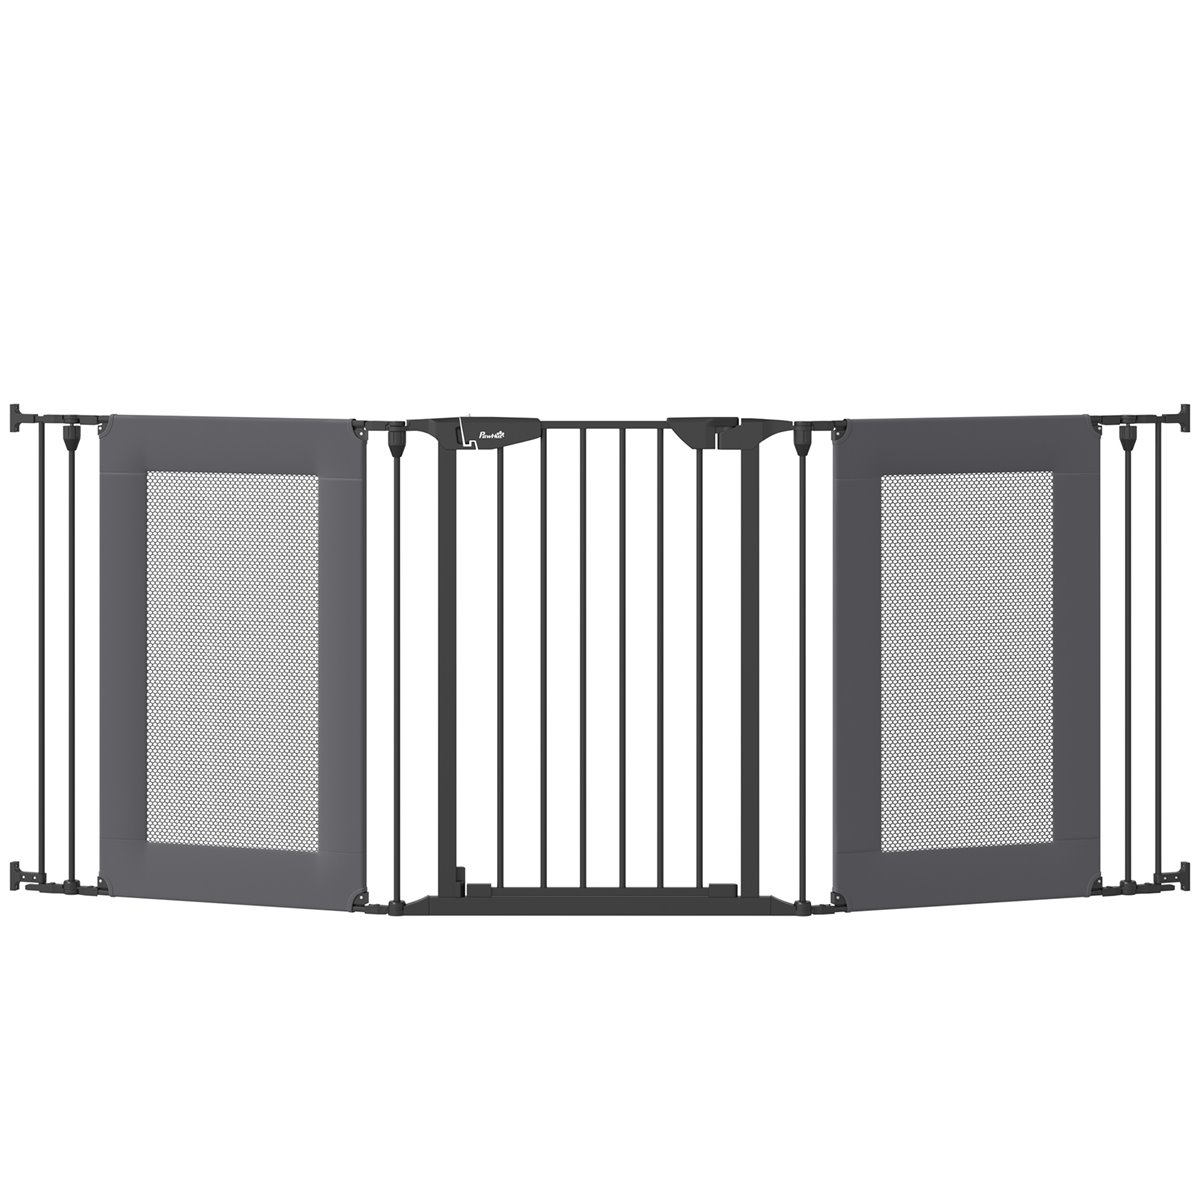 Barrera de seguridad extensible de madera de montaje fijo en pared - blanca